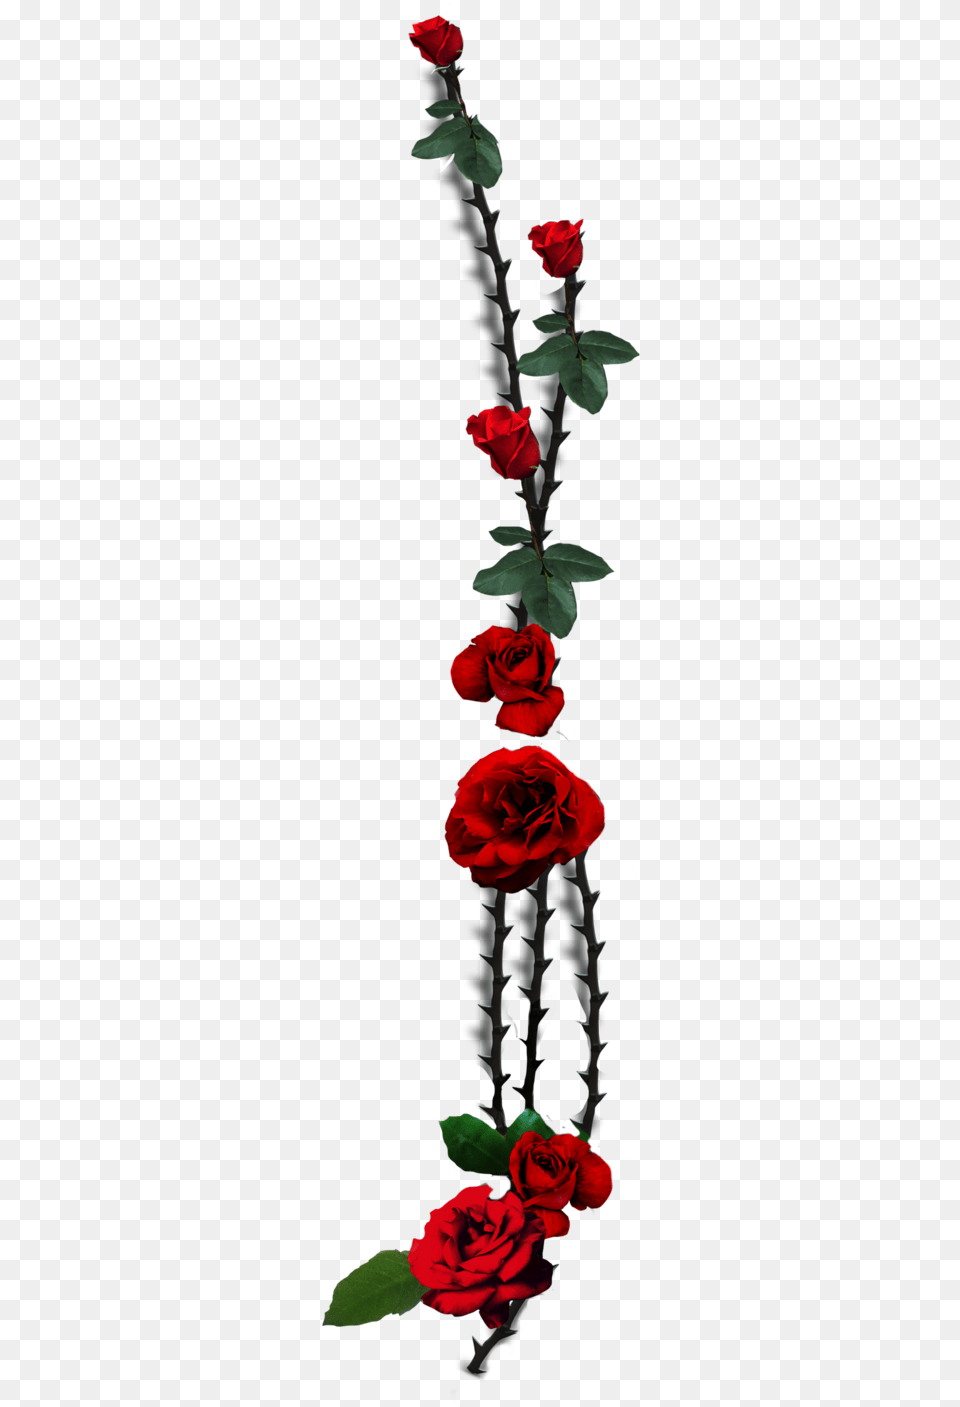 Garden Roses Thorns Spines And Prickles Plant Stem Transparent Rose Thorn, Flower, Flower Arrangement, Petal, Flower Bouquet Free Png Download